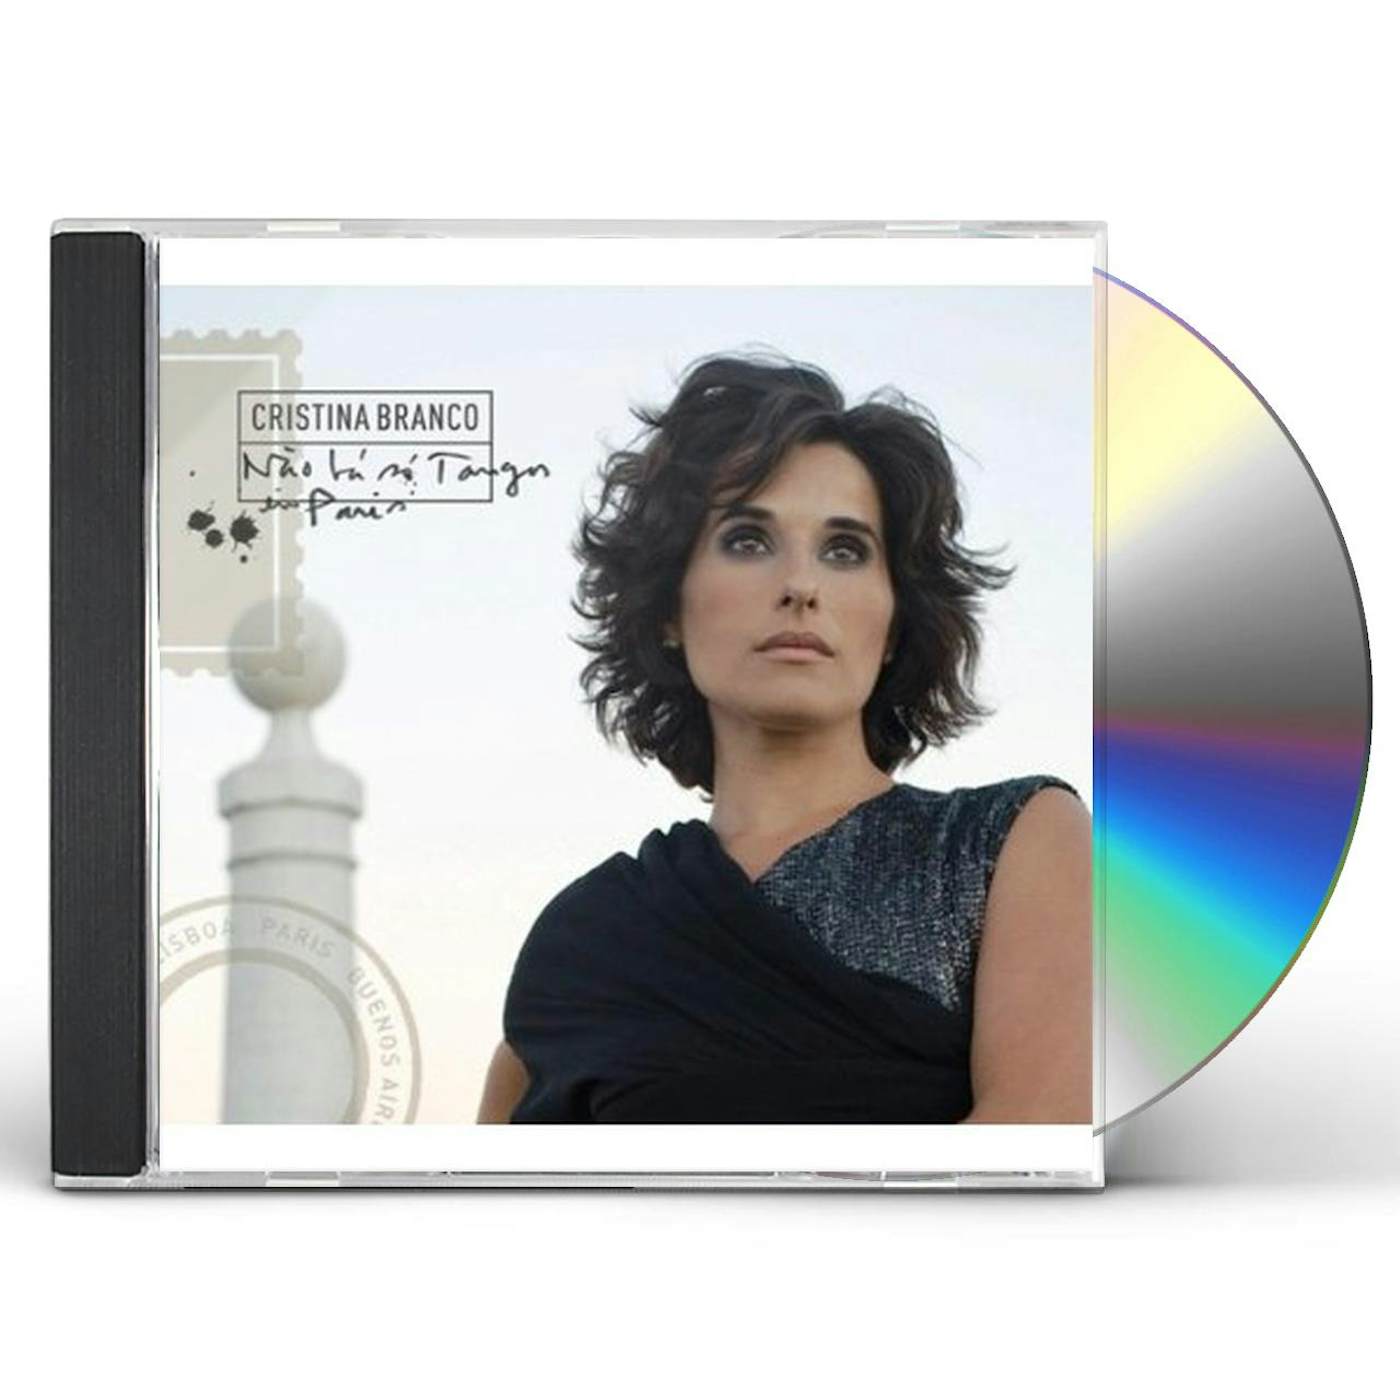 Cristina Branco NAO HA SO TANGOS EM PARIS CD